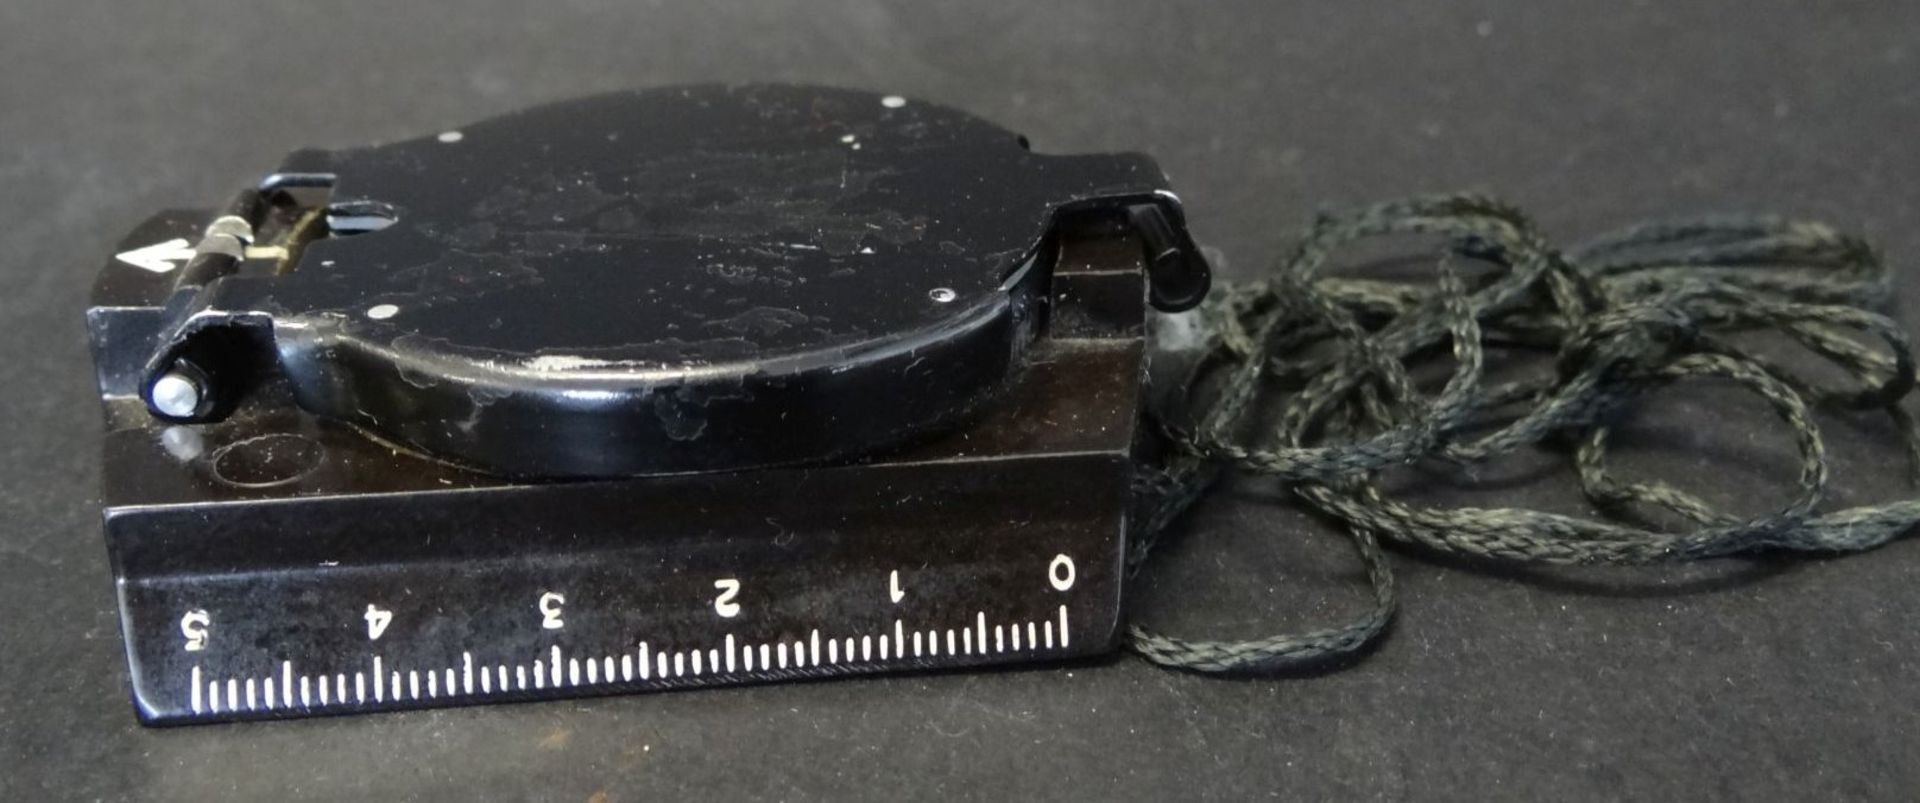 Metall Marschkompass, 7,5x5,5 cm